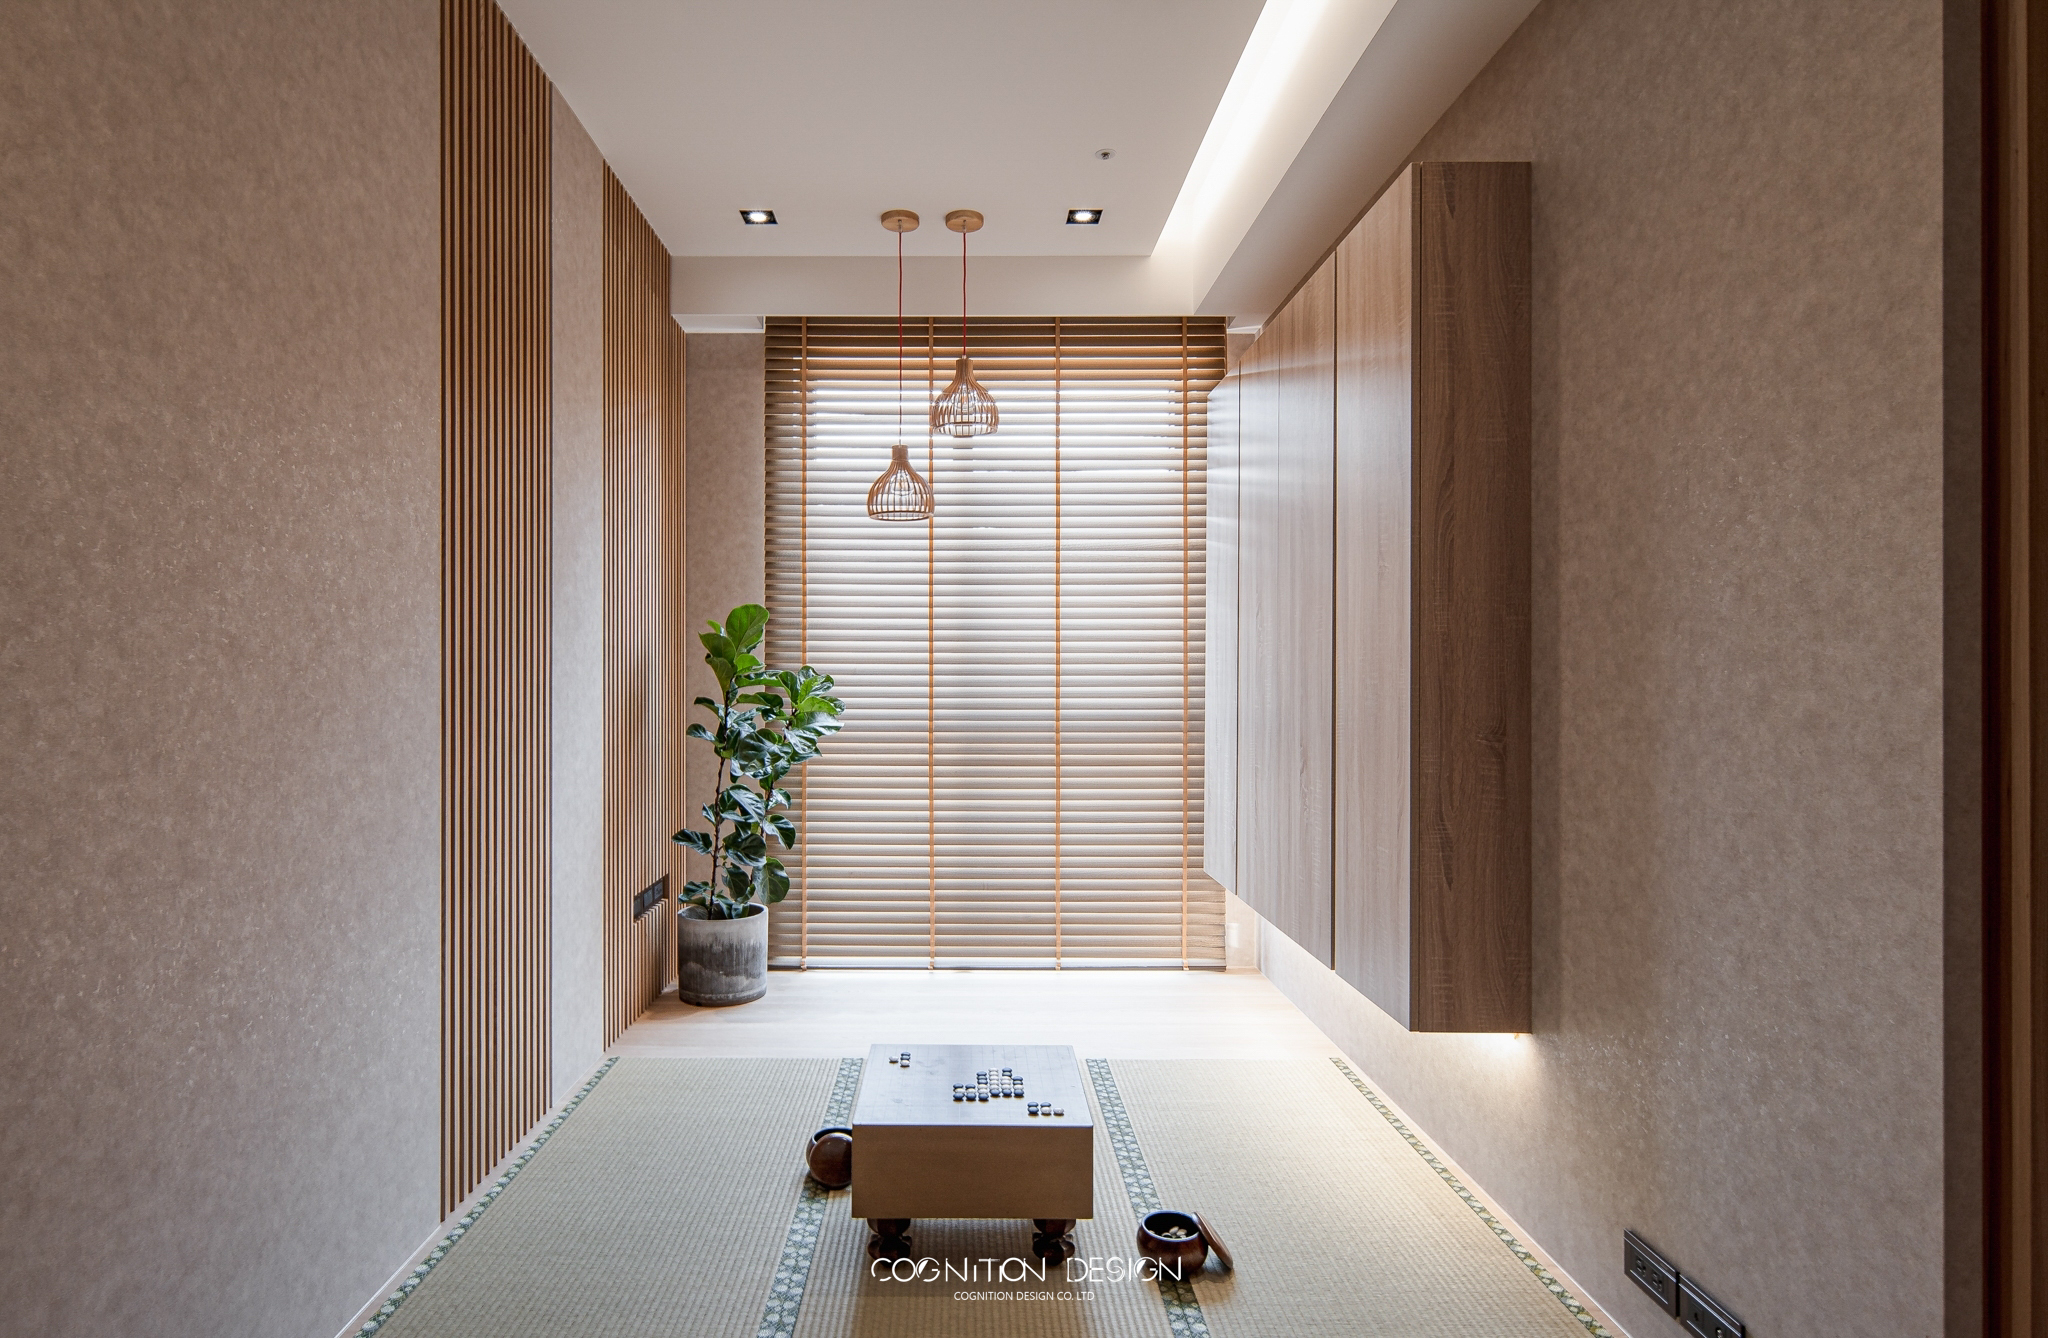 為了延續整體風格，特別選擇高品質的百葉窗，搭配上附有竹藝質感的燈具